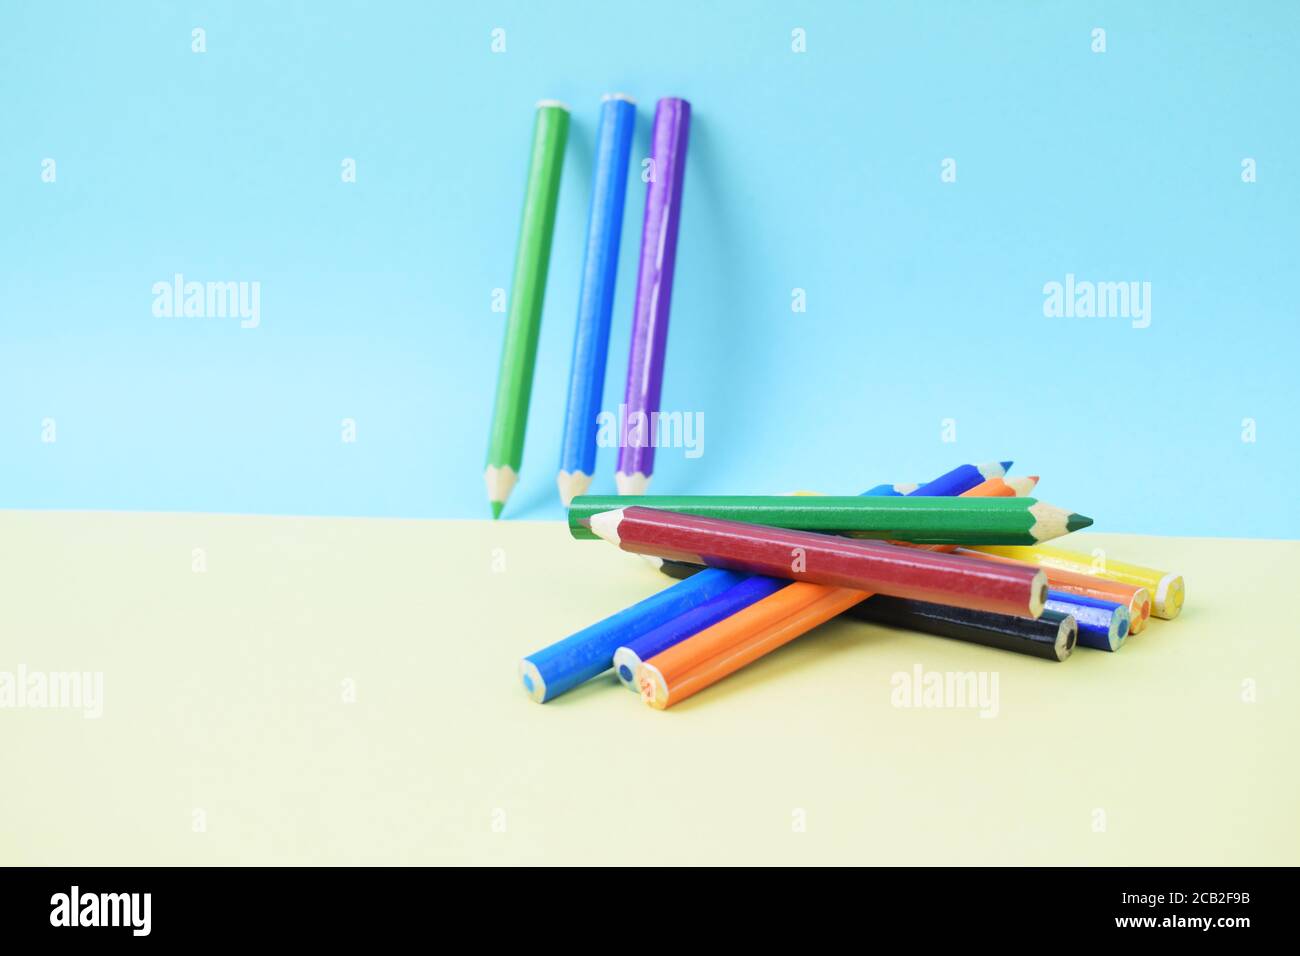 Fond plat coloré avec fournitures artisanales crayons de couleur pour l'école retour à l'école (61) Banque D'Images